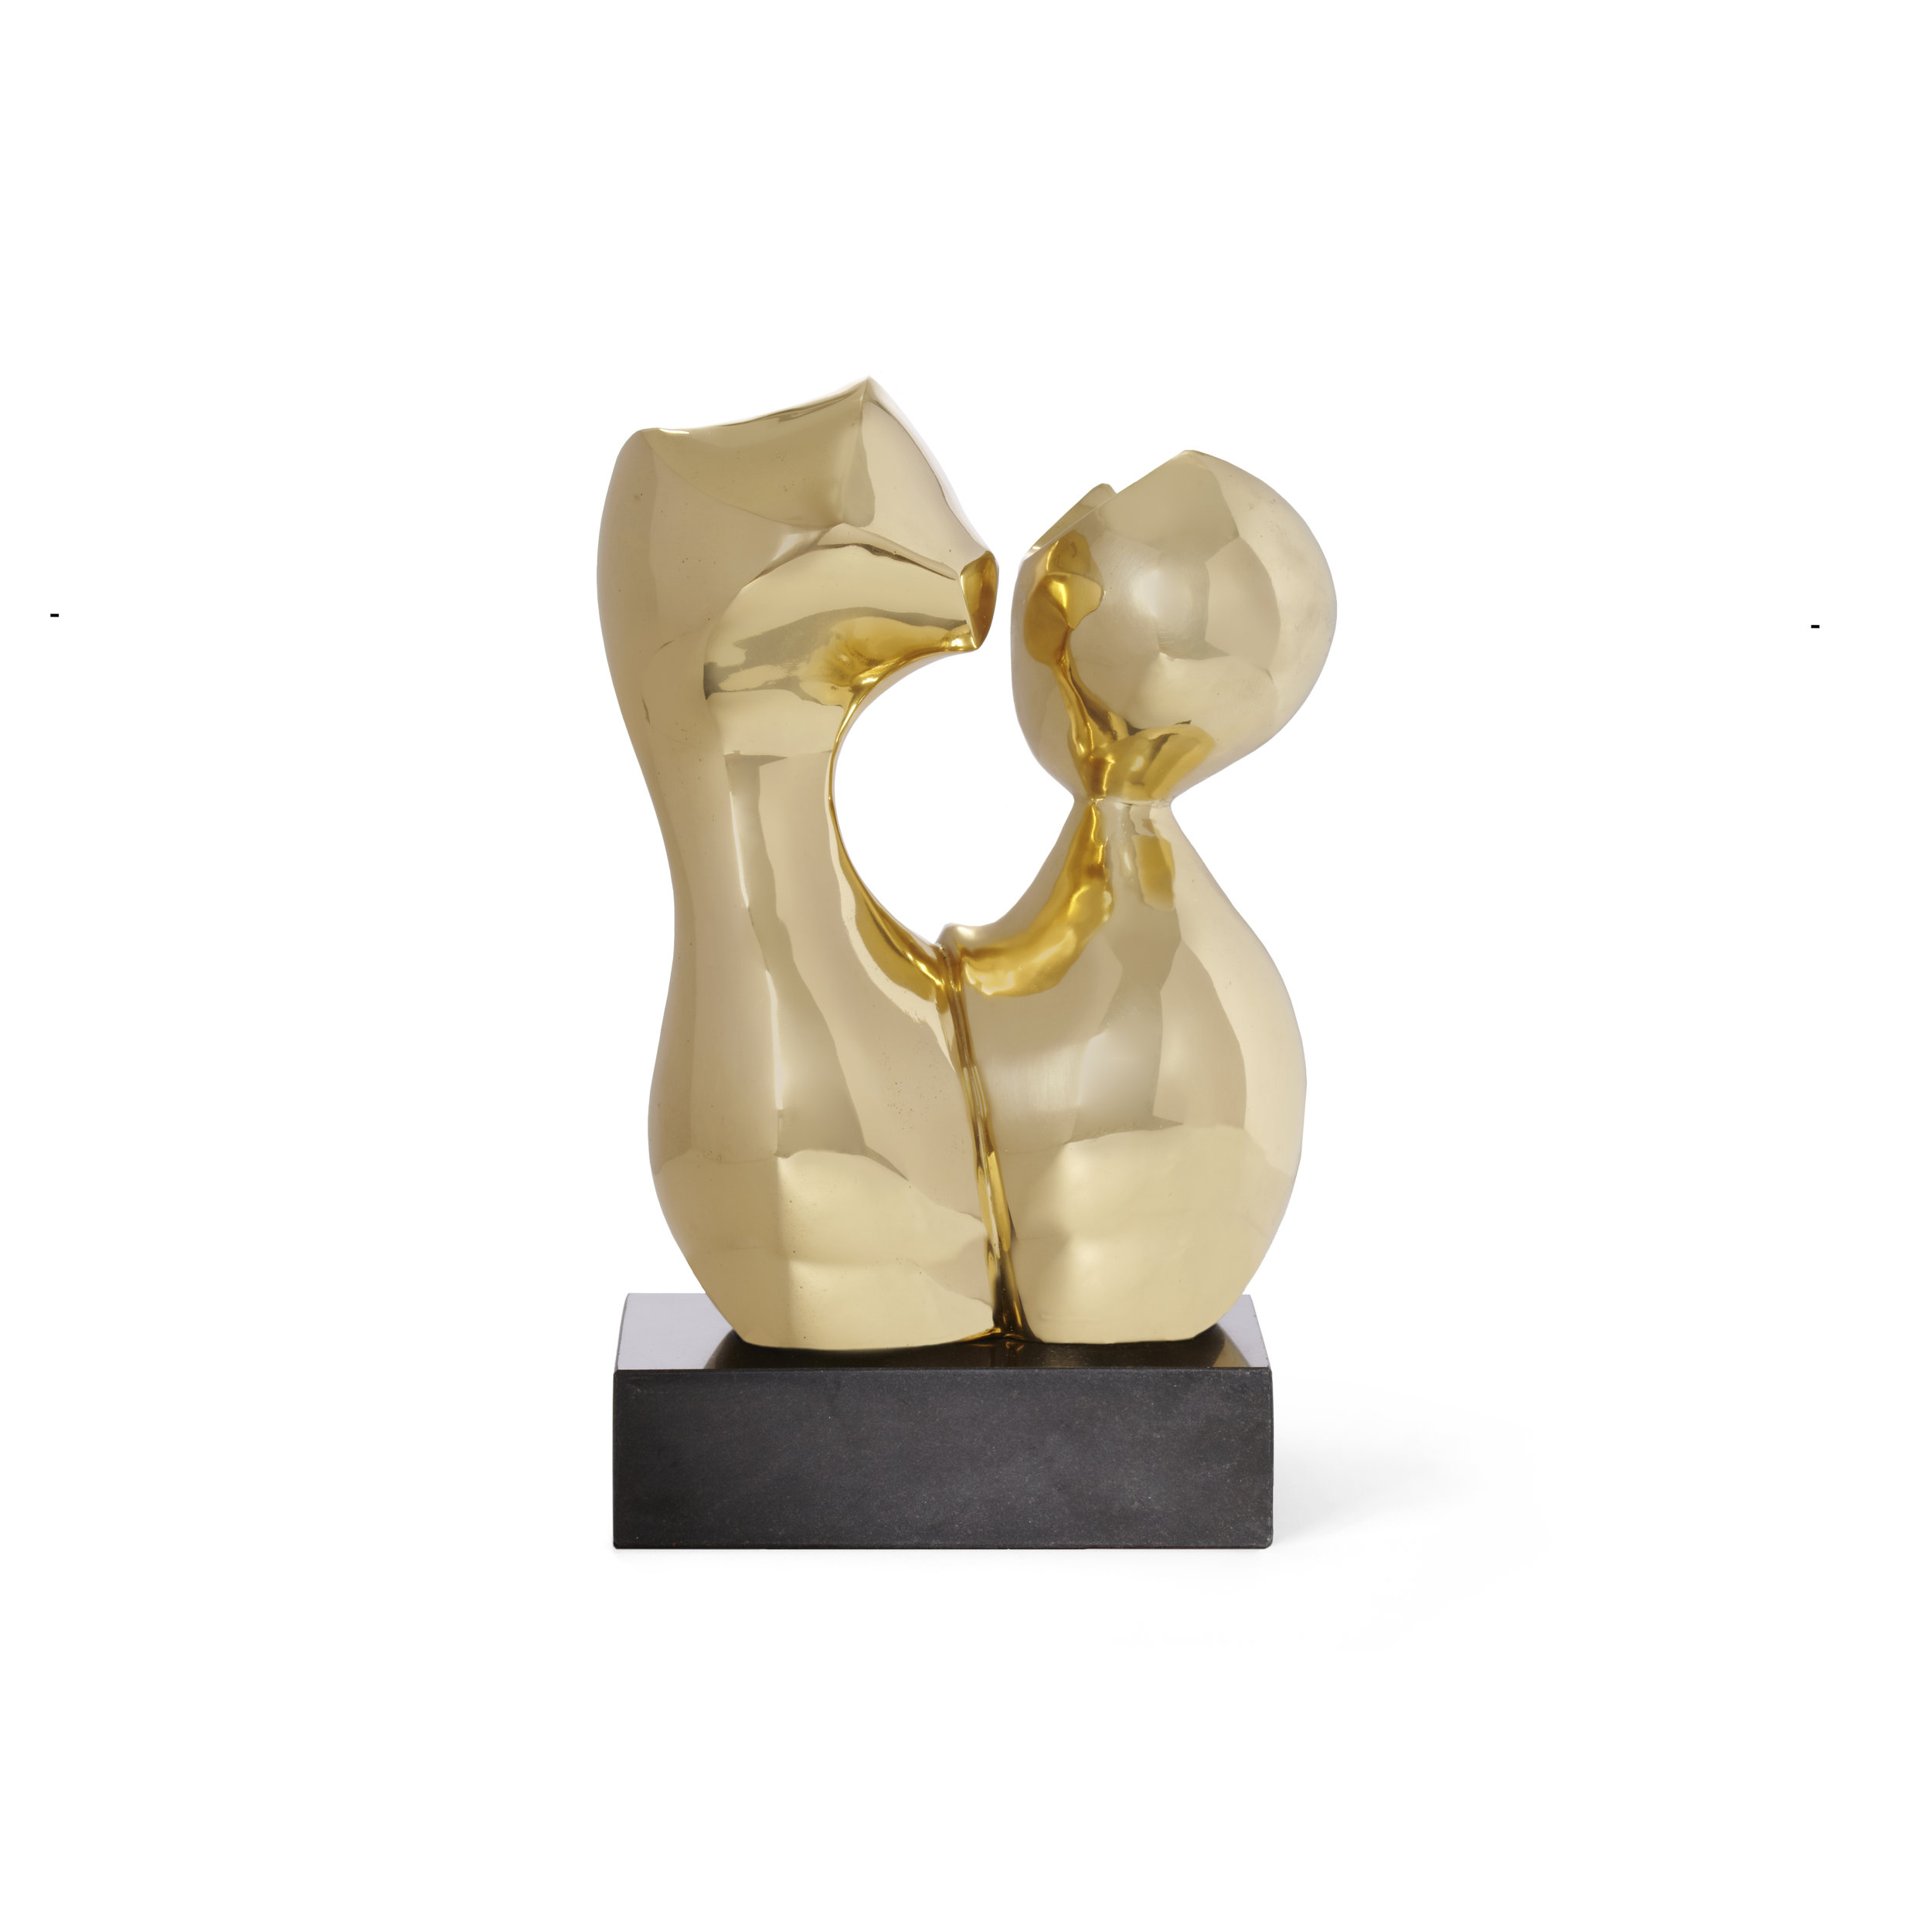 BregenzSculpture_Gold_23094528001_FW15.jpg